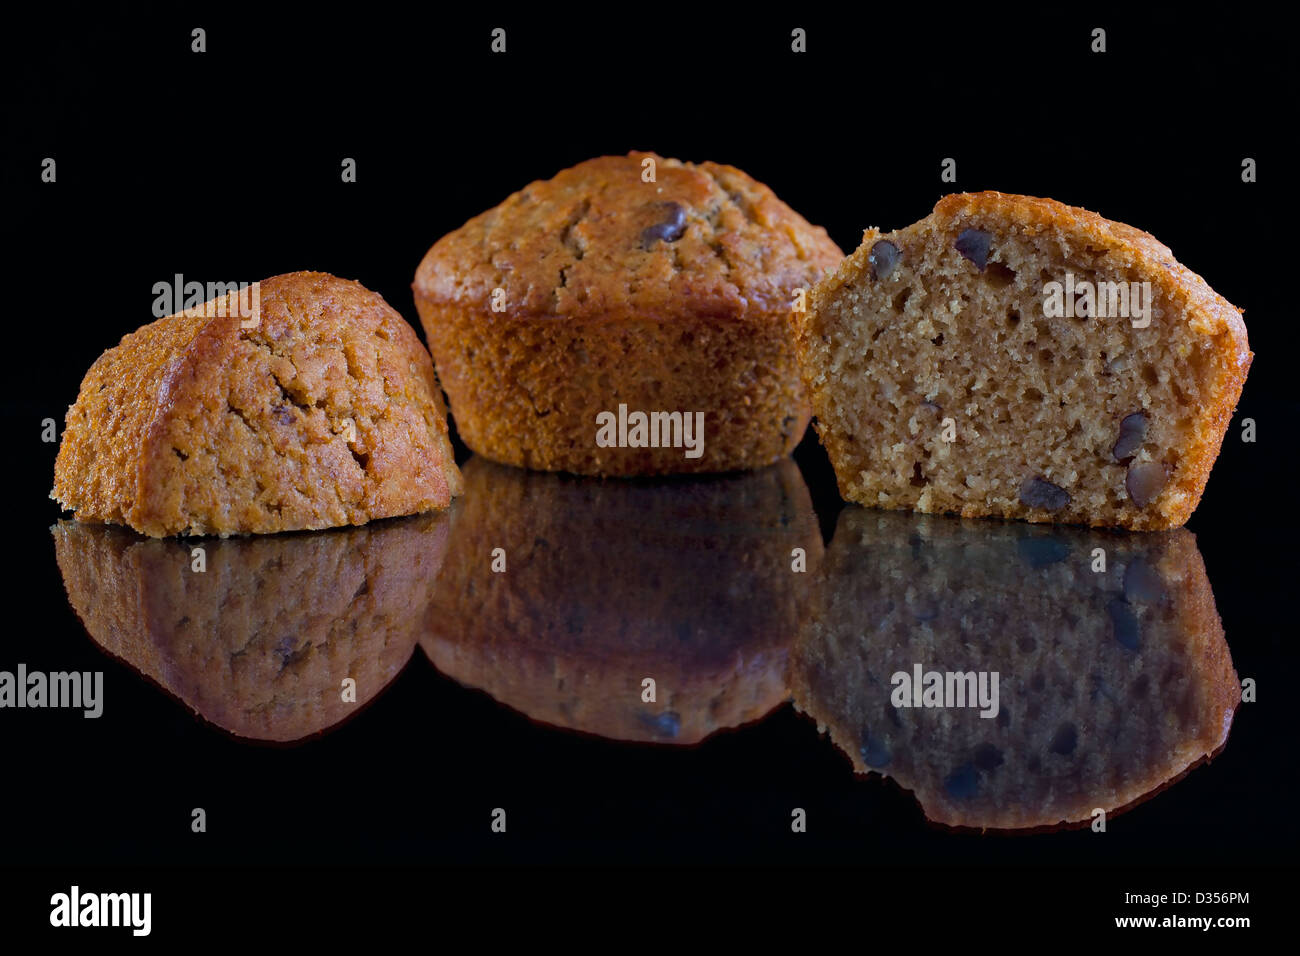 Frisch gebackene Walnuss-Muffins auf einer reflektierenden Oberfläche schwarz Stockfoto